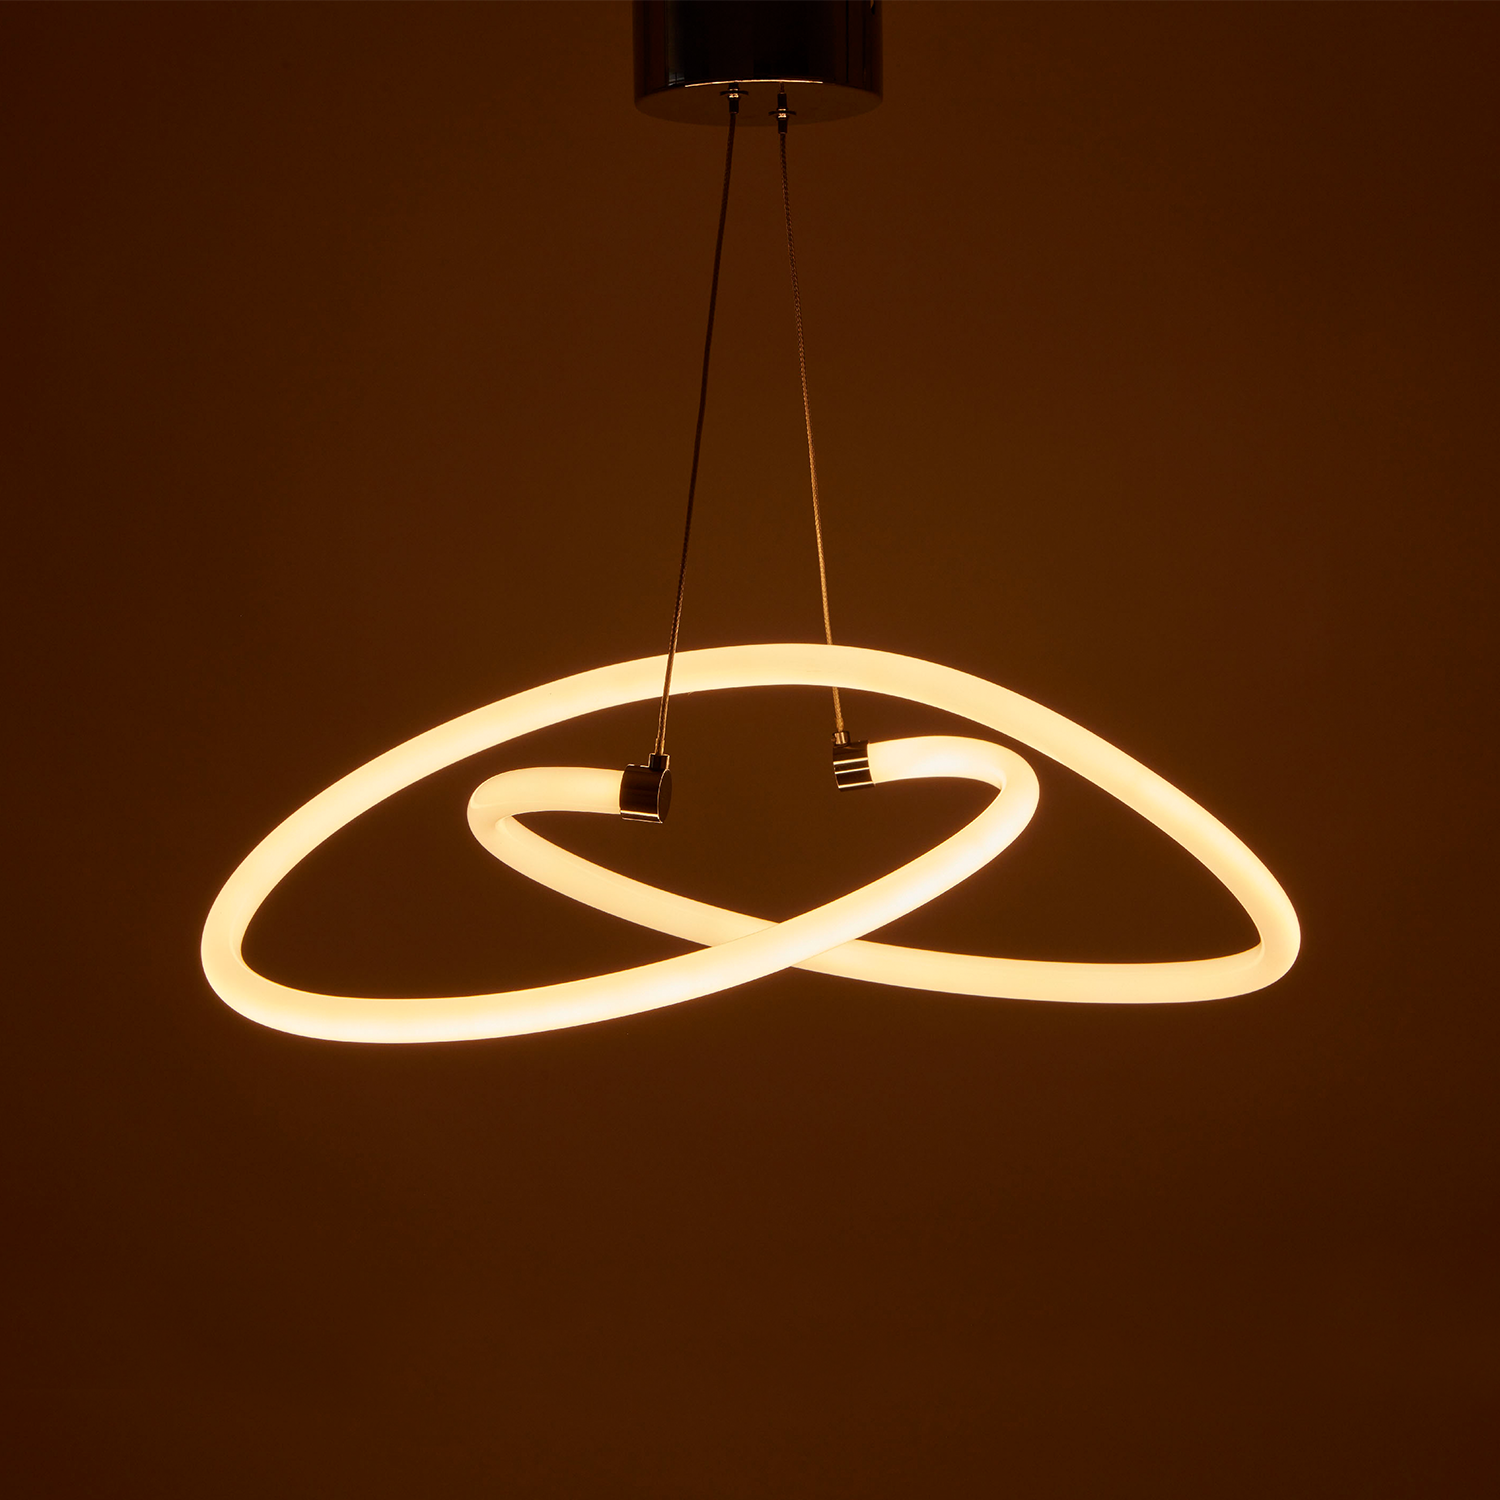 Luminaria LED decorativa de suspender, uso interior, DL-2420.CR Dekor